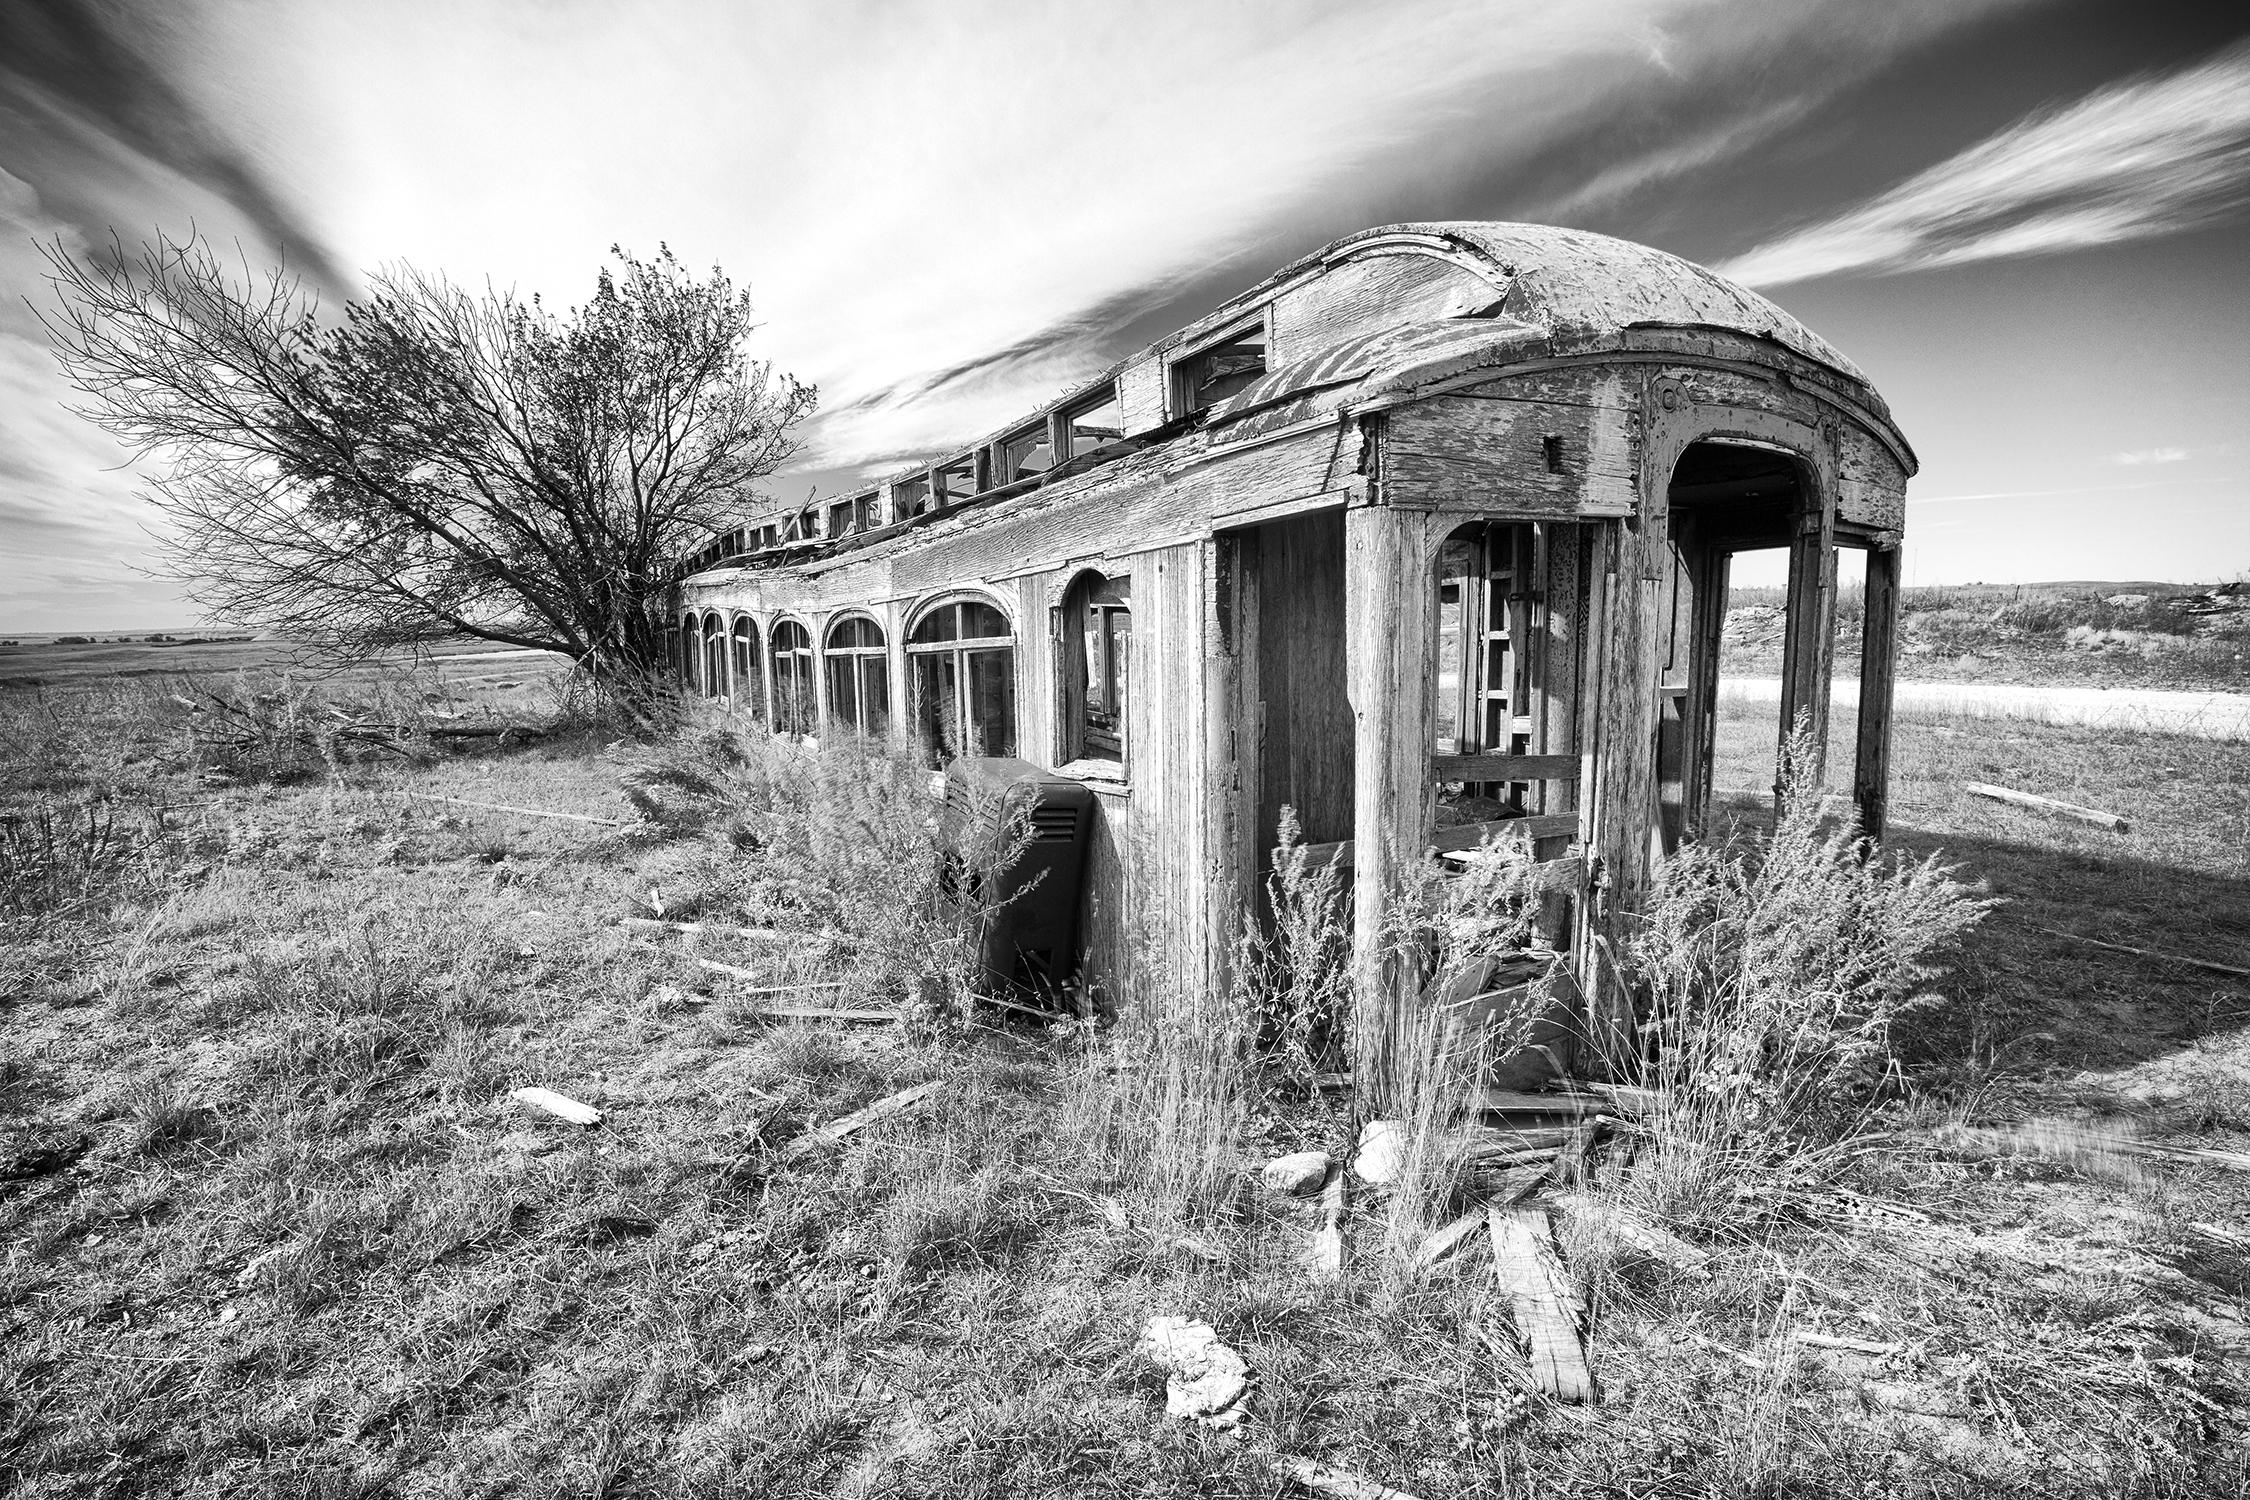 Rebecca Skinner Black and White Photograph – "Great Northern Railcar", zeitgenössisch, Landschaft, North Dakota, Fotografie